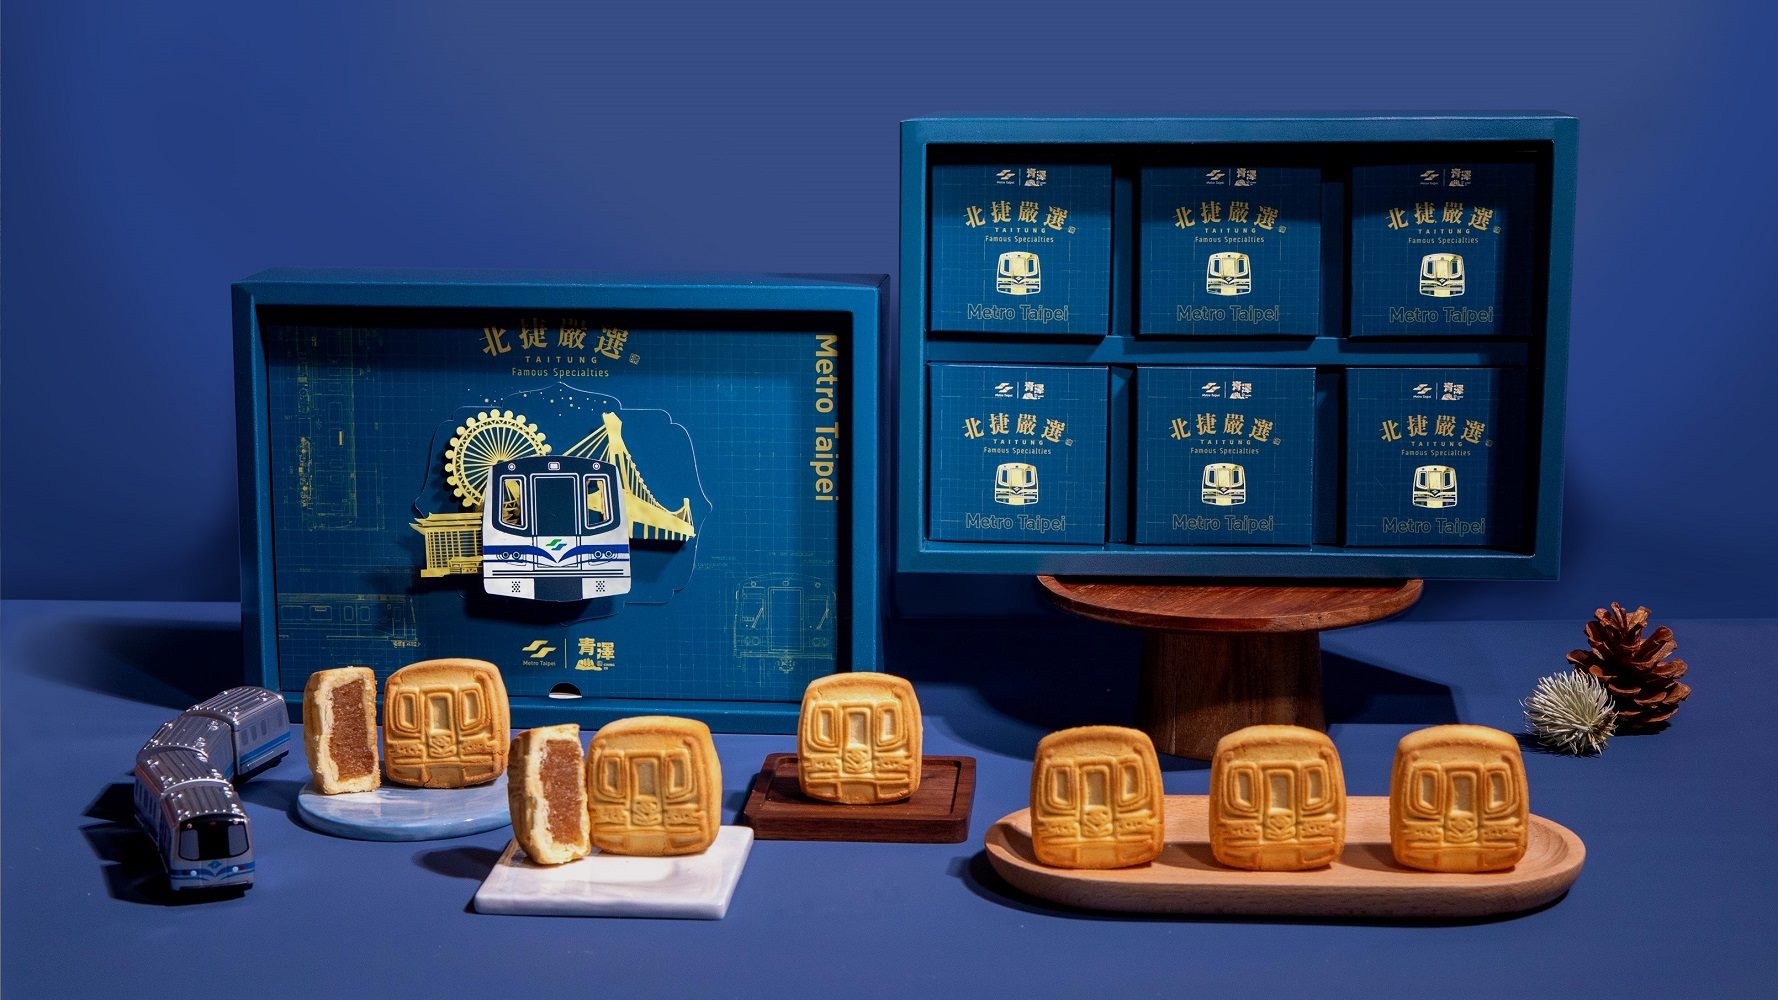 Taipei MRT bekerja sama dengan merek oleh-oleh terkenal dari Taitung untuk meluncurkan kue nanas "捷運旺來酥". (Sumber foto : Pemerintah Kota Taipei)